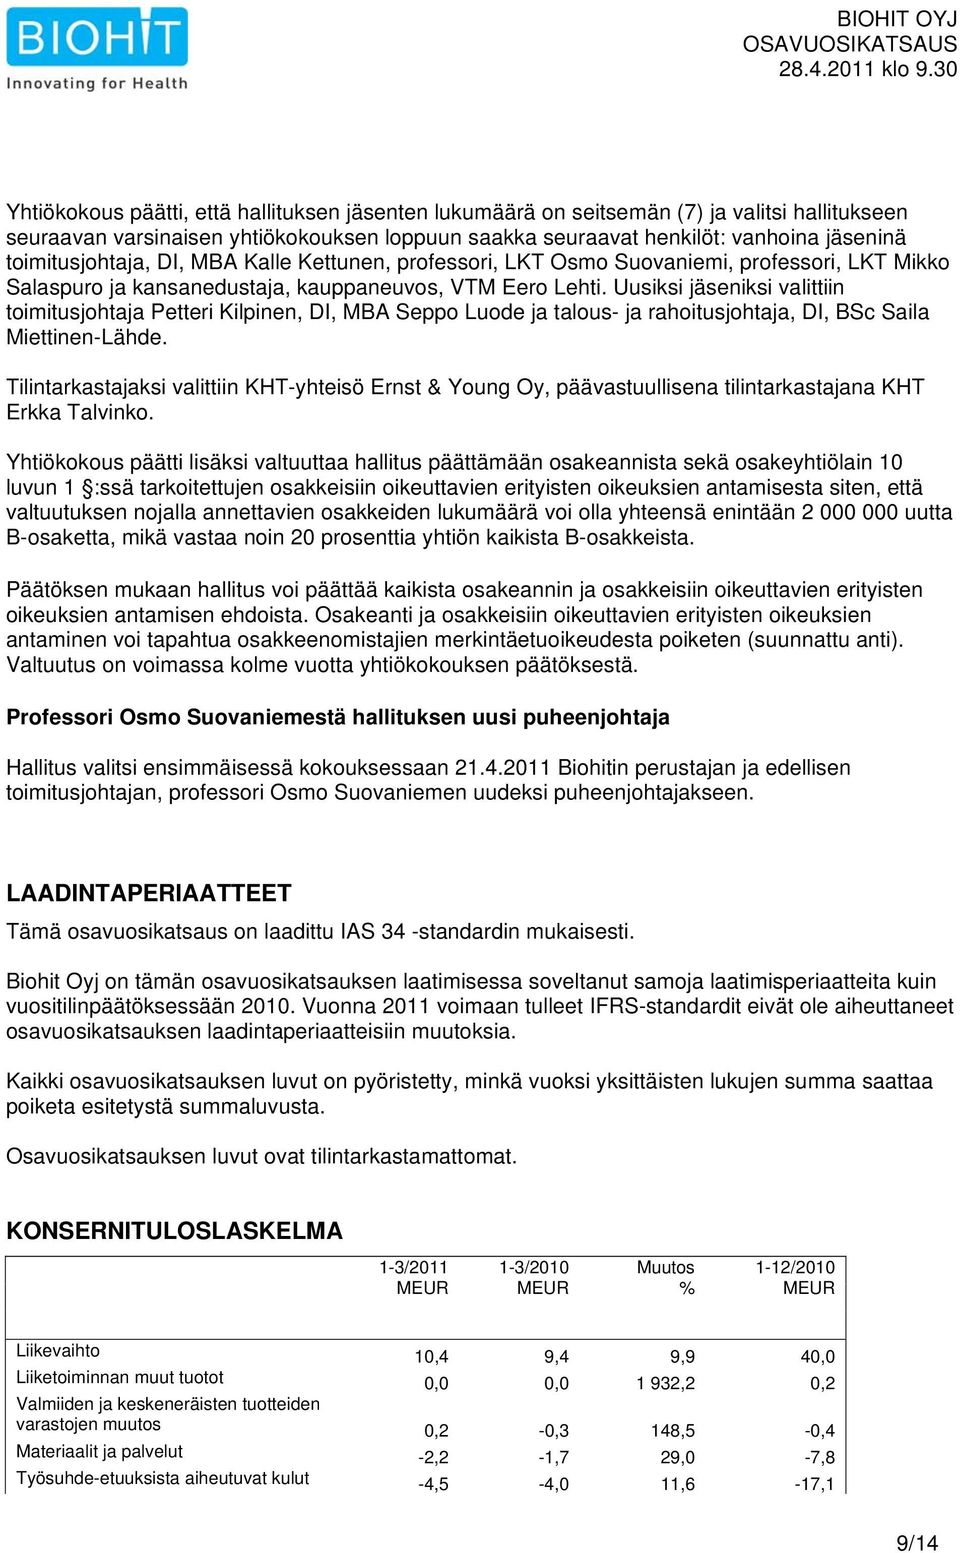 Uusiksi jäseniksi valittiin toimitusjohtaja Petteri Kilpinen, DI, MBA Seppo Luode ja talous- ja rahoitusjohtaja, DI, BSc Saila Miettinen-Lähde.